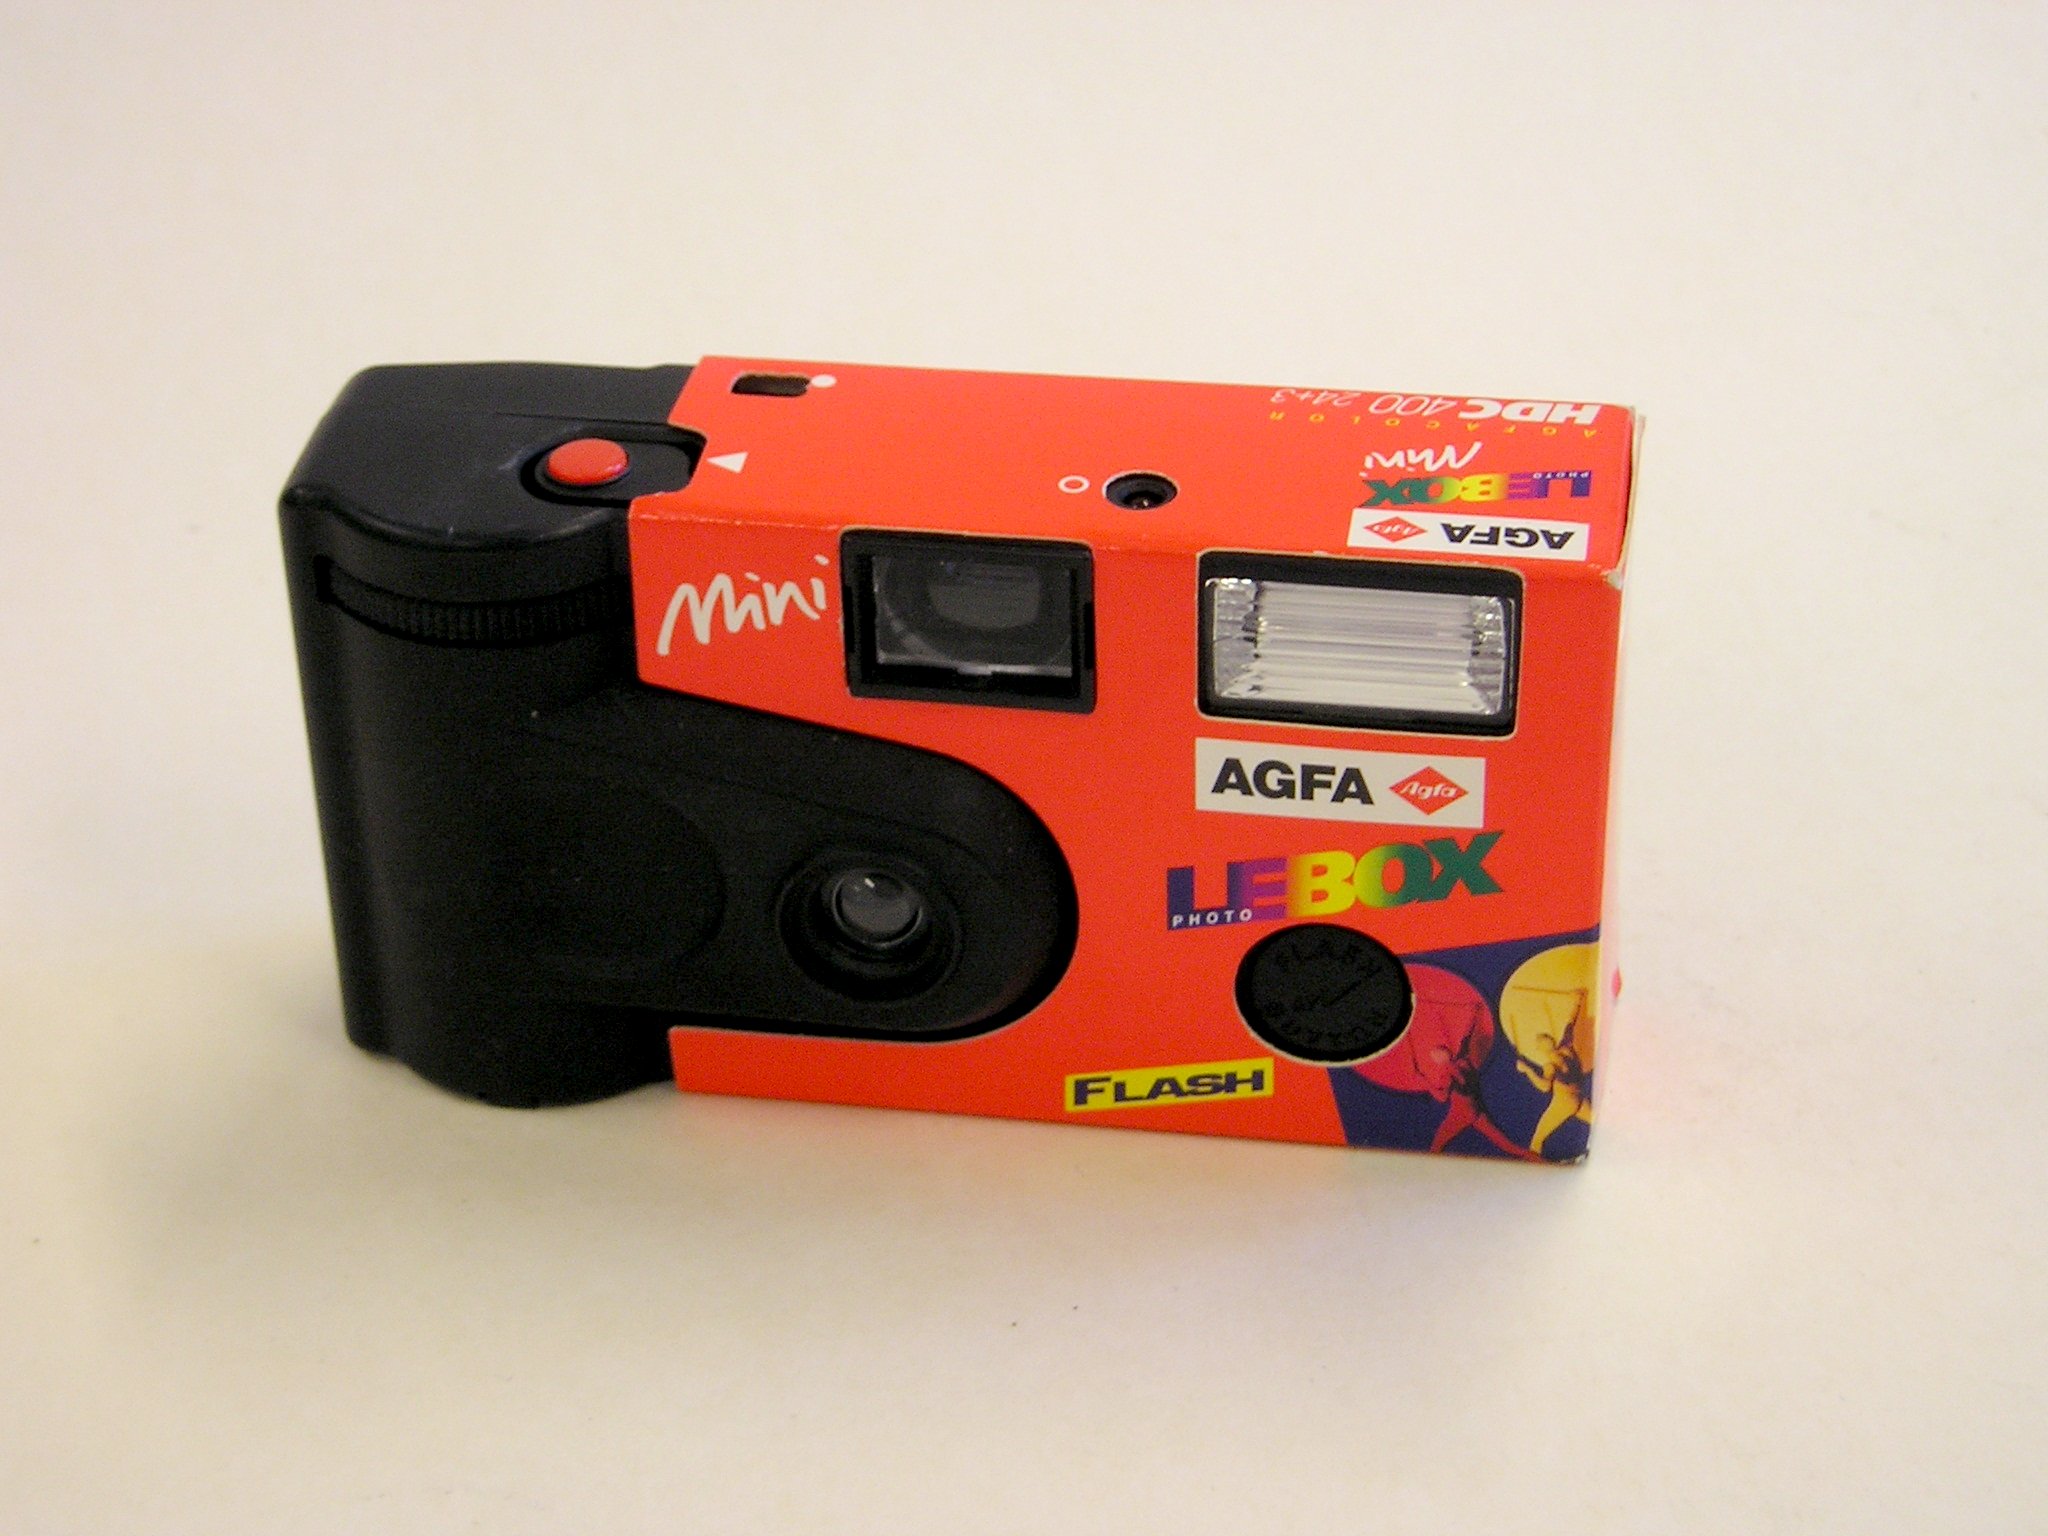 Agfa Mini Lebox